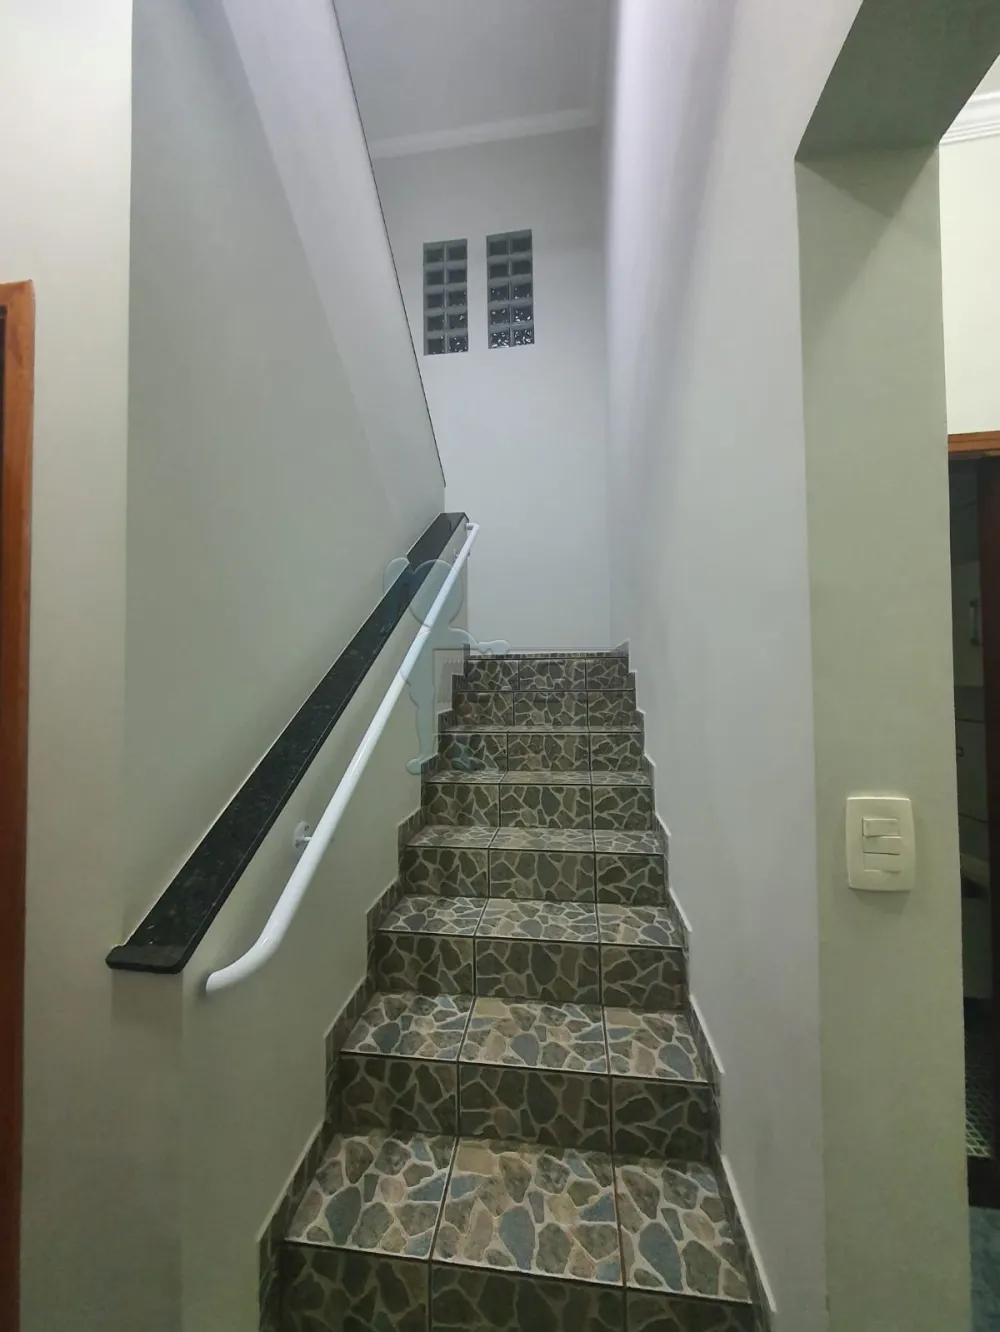 Comprar Casas / Padrão em Ribeirão Preto R$ 460.000,00 - Foto 8